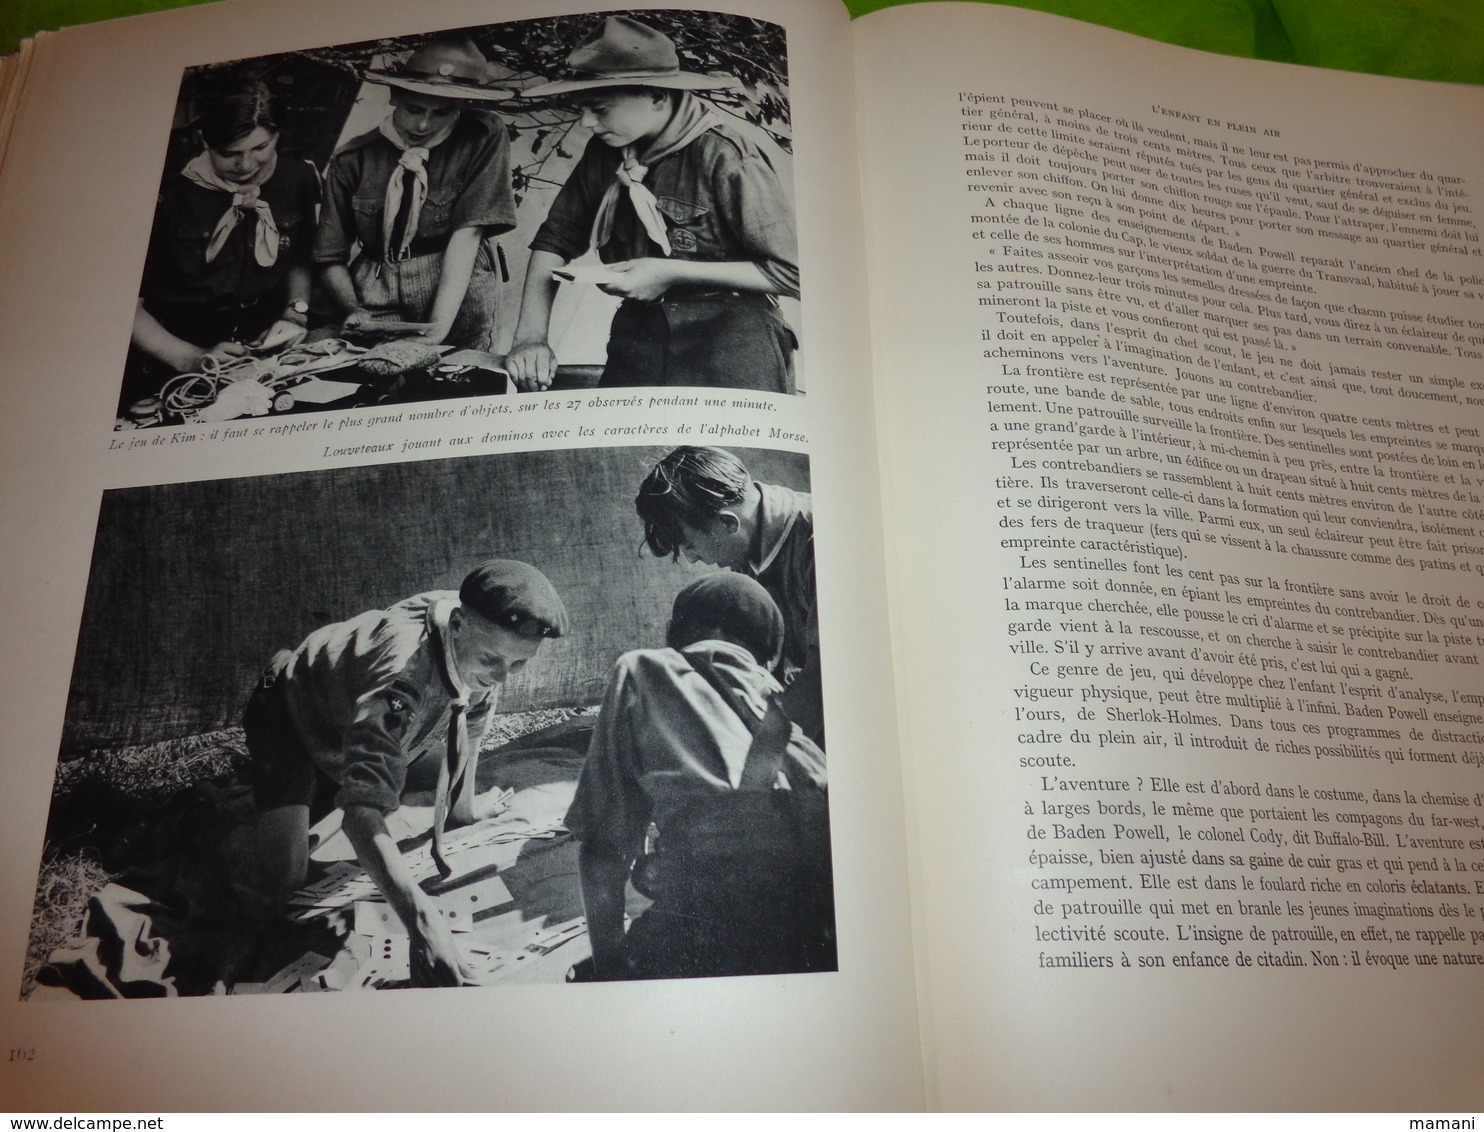 2 tomes -le visage de l'enfance-1937-allaitement-scoutisme-puericulture a travers les ages etc....preface p hazard